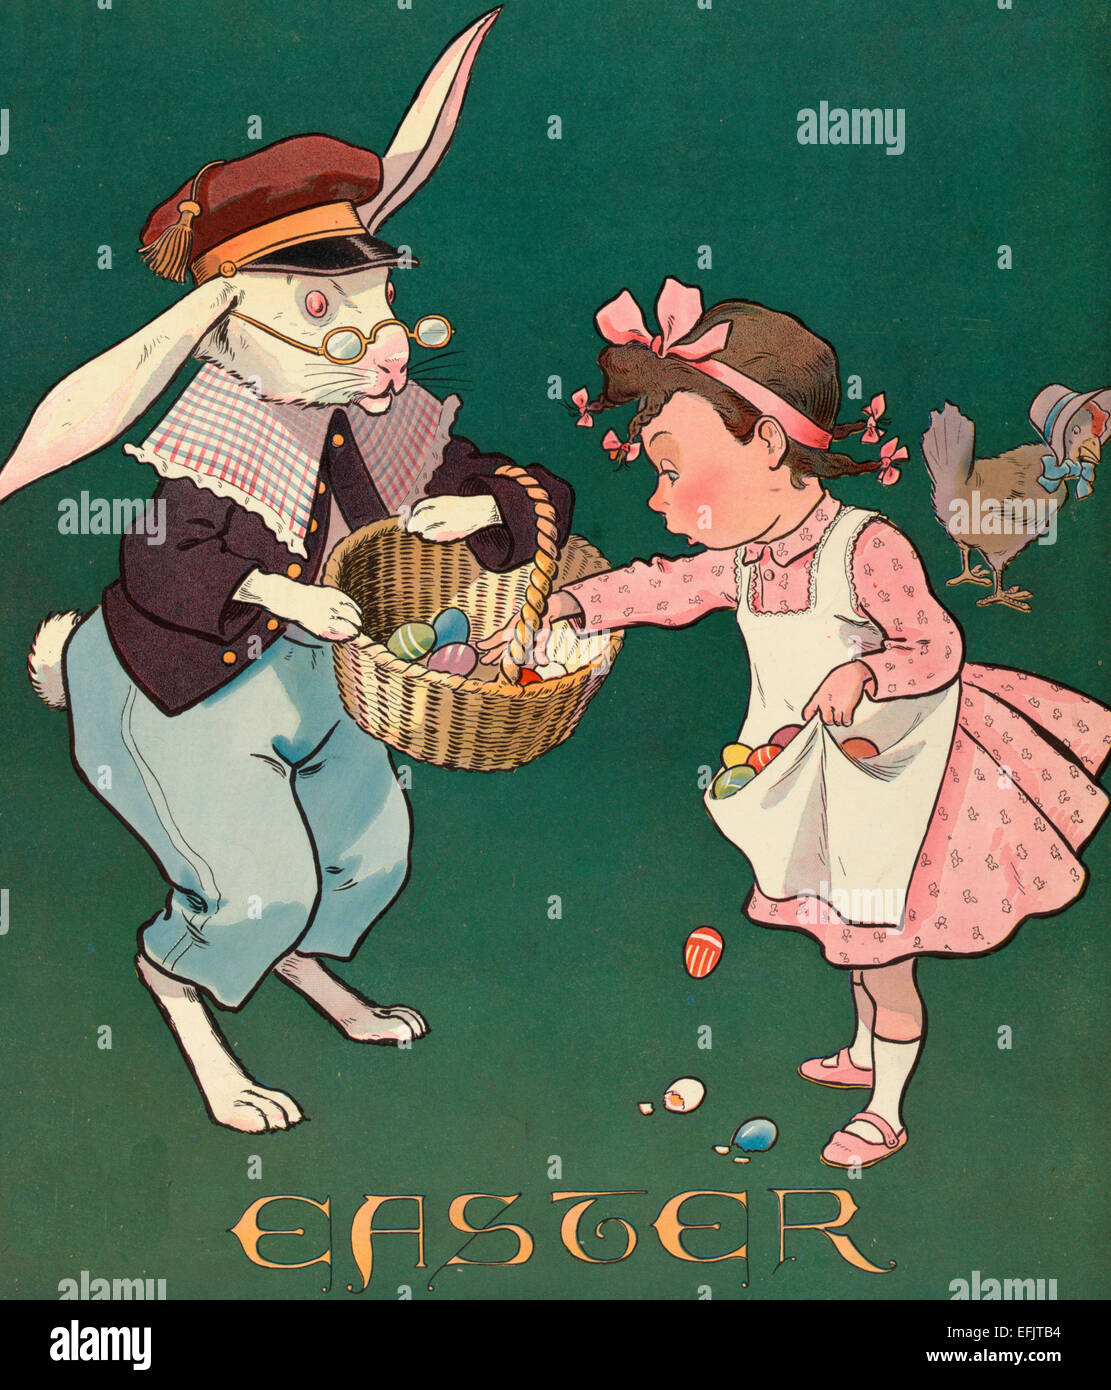 Vintage Illustration montre une petite fille en prenant en compte tous les oeufs colorés de l'Easter Bunny's panier ; elle est de les mettre dans son tablier, mais certains sont tombés sur le sol et sont brisés. Il y a une poule portant un bonnet à l'arrière-plan, vers 1903 Banque D'Images